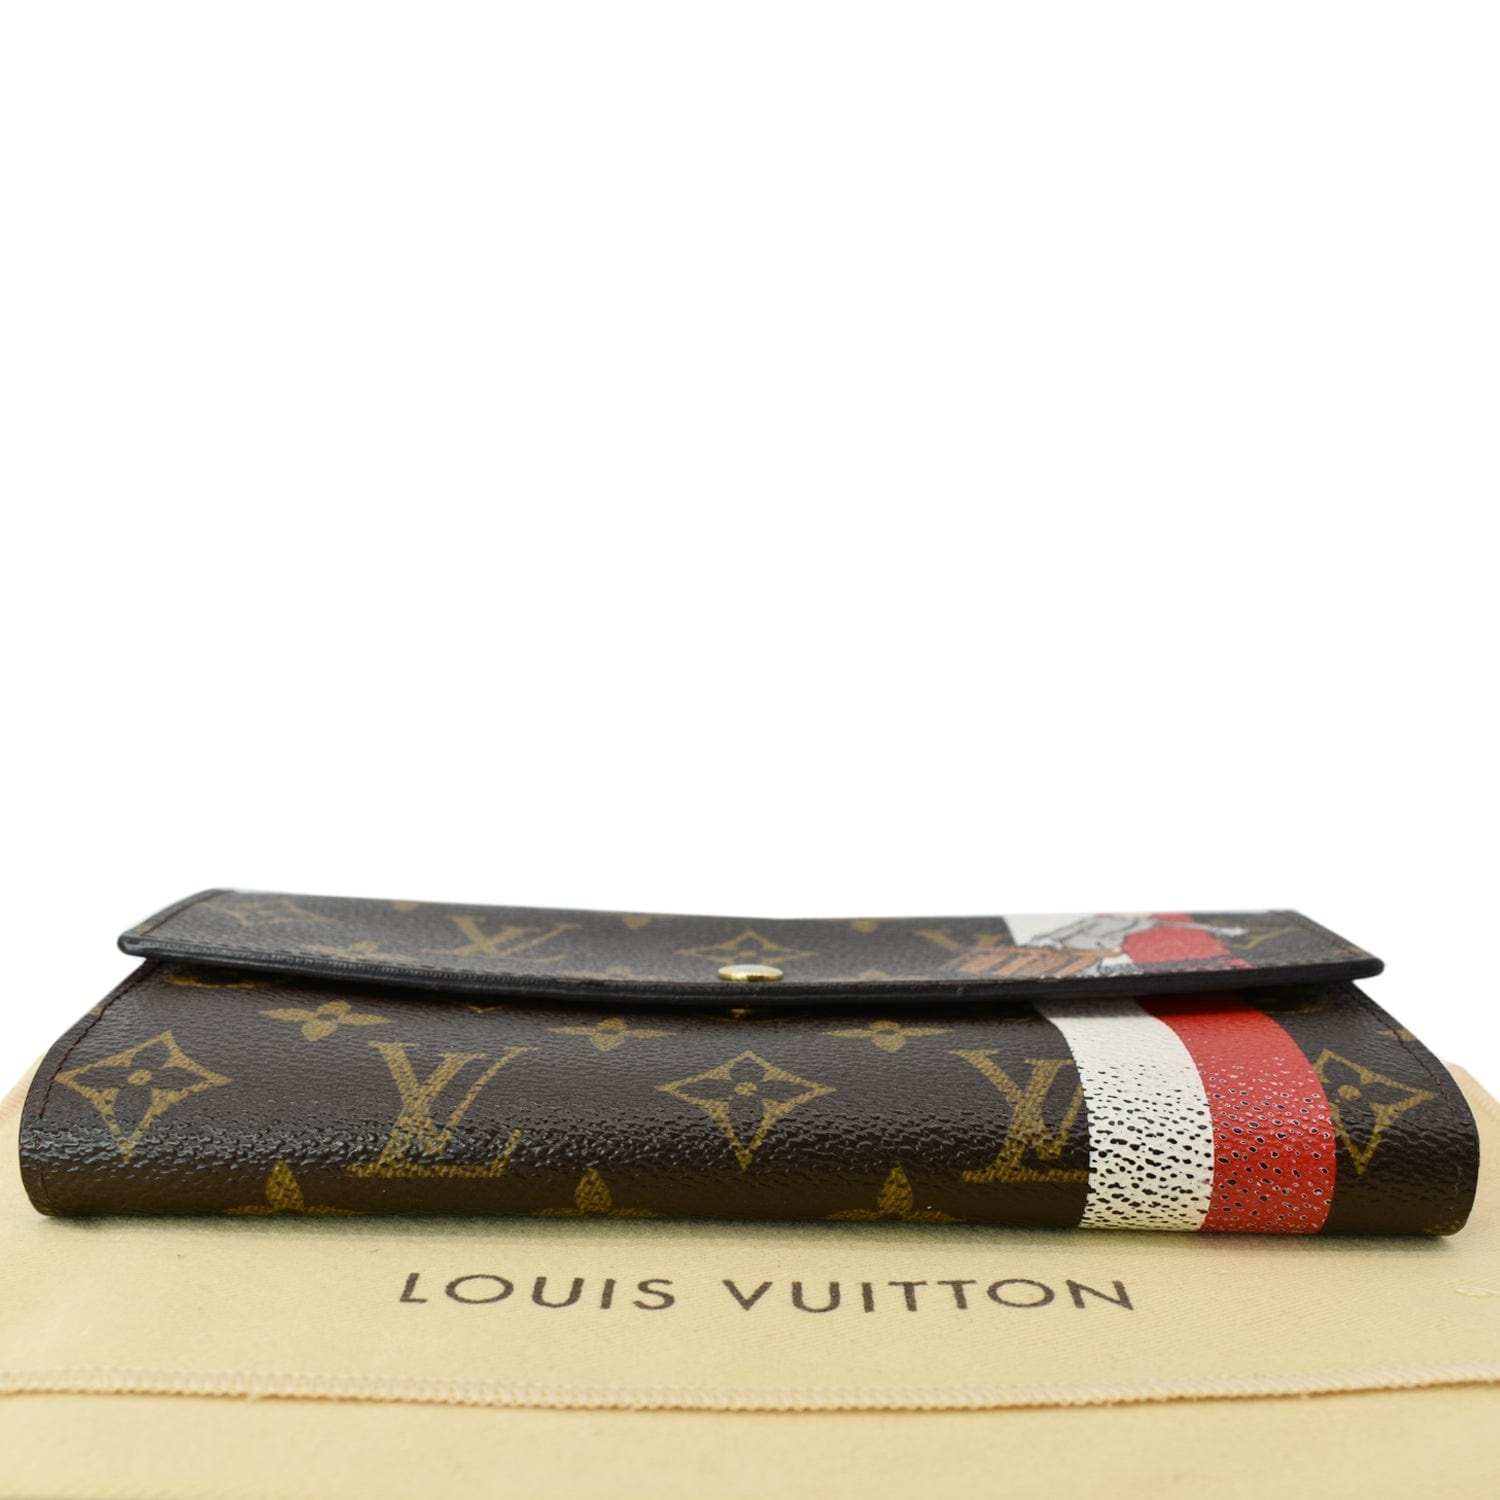 Authentic Rare Louis Vuitton Monogram Canvas Portefeuile Sarah Wallet